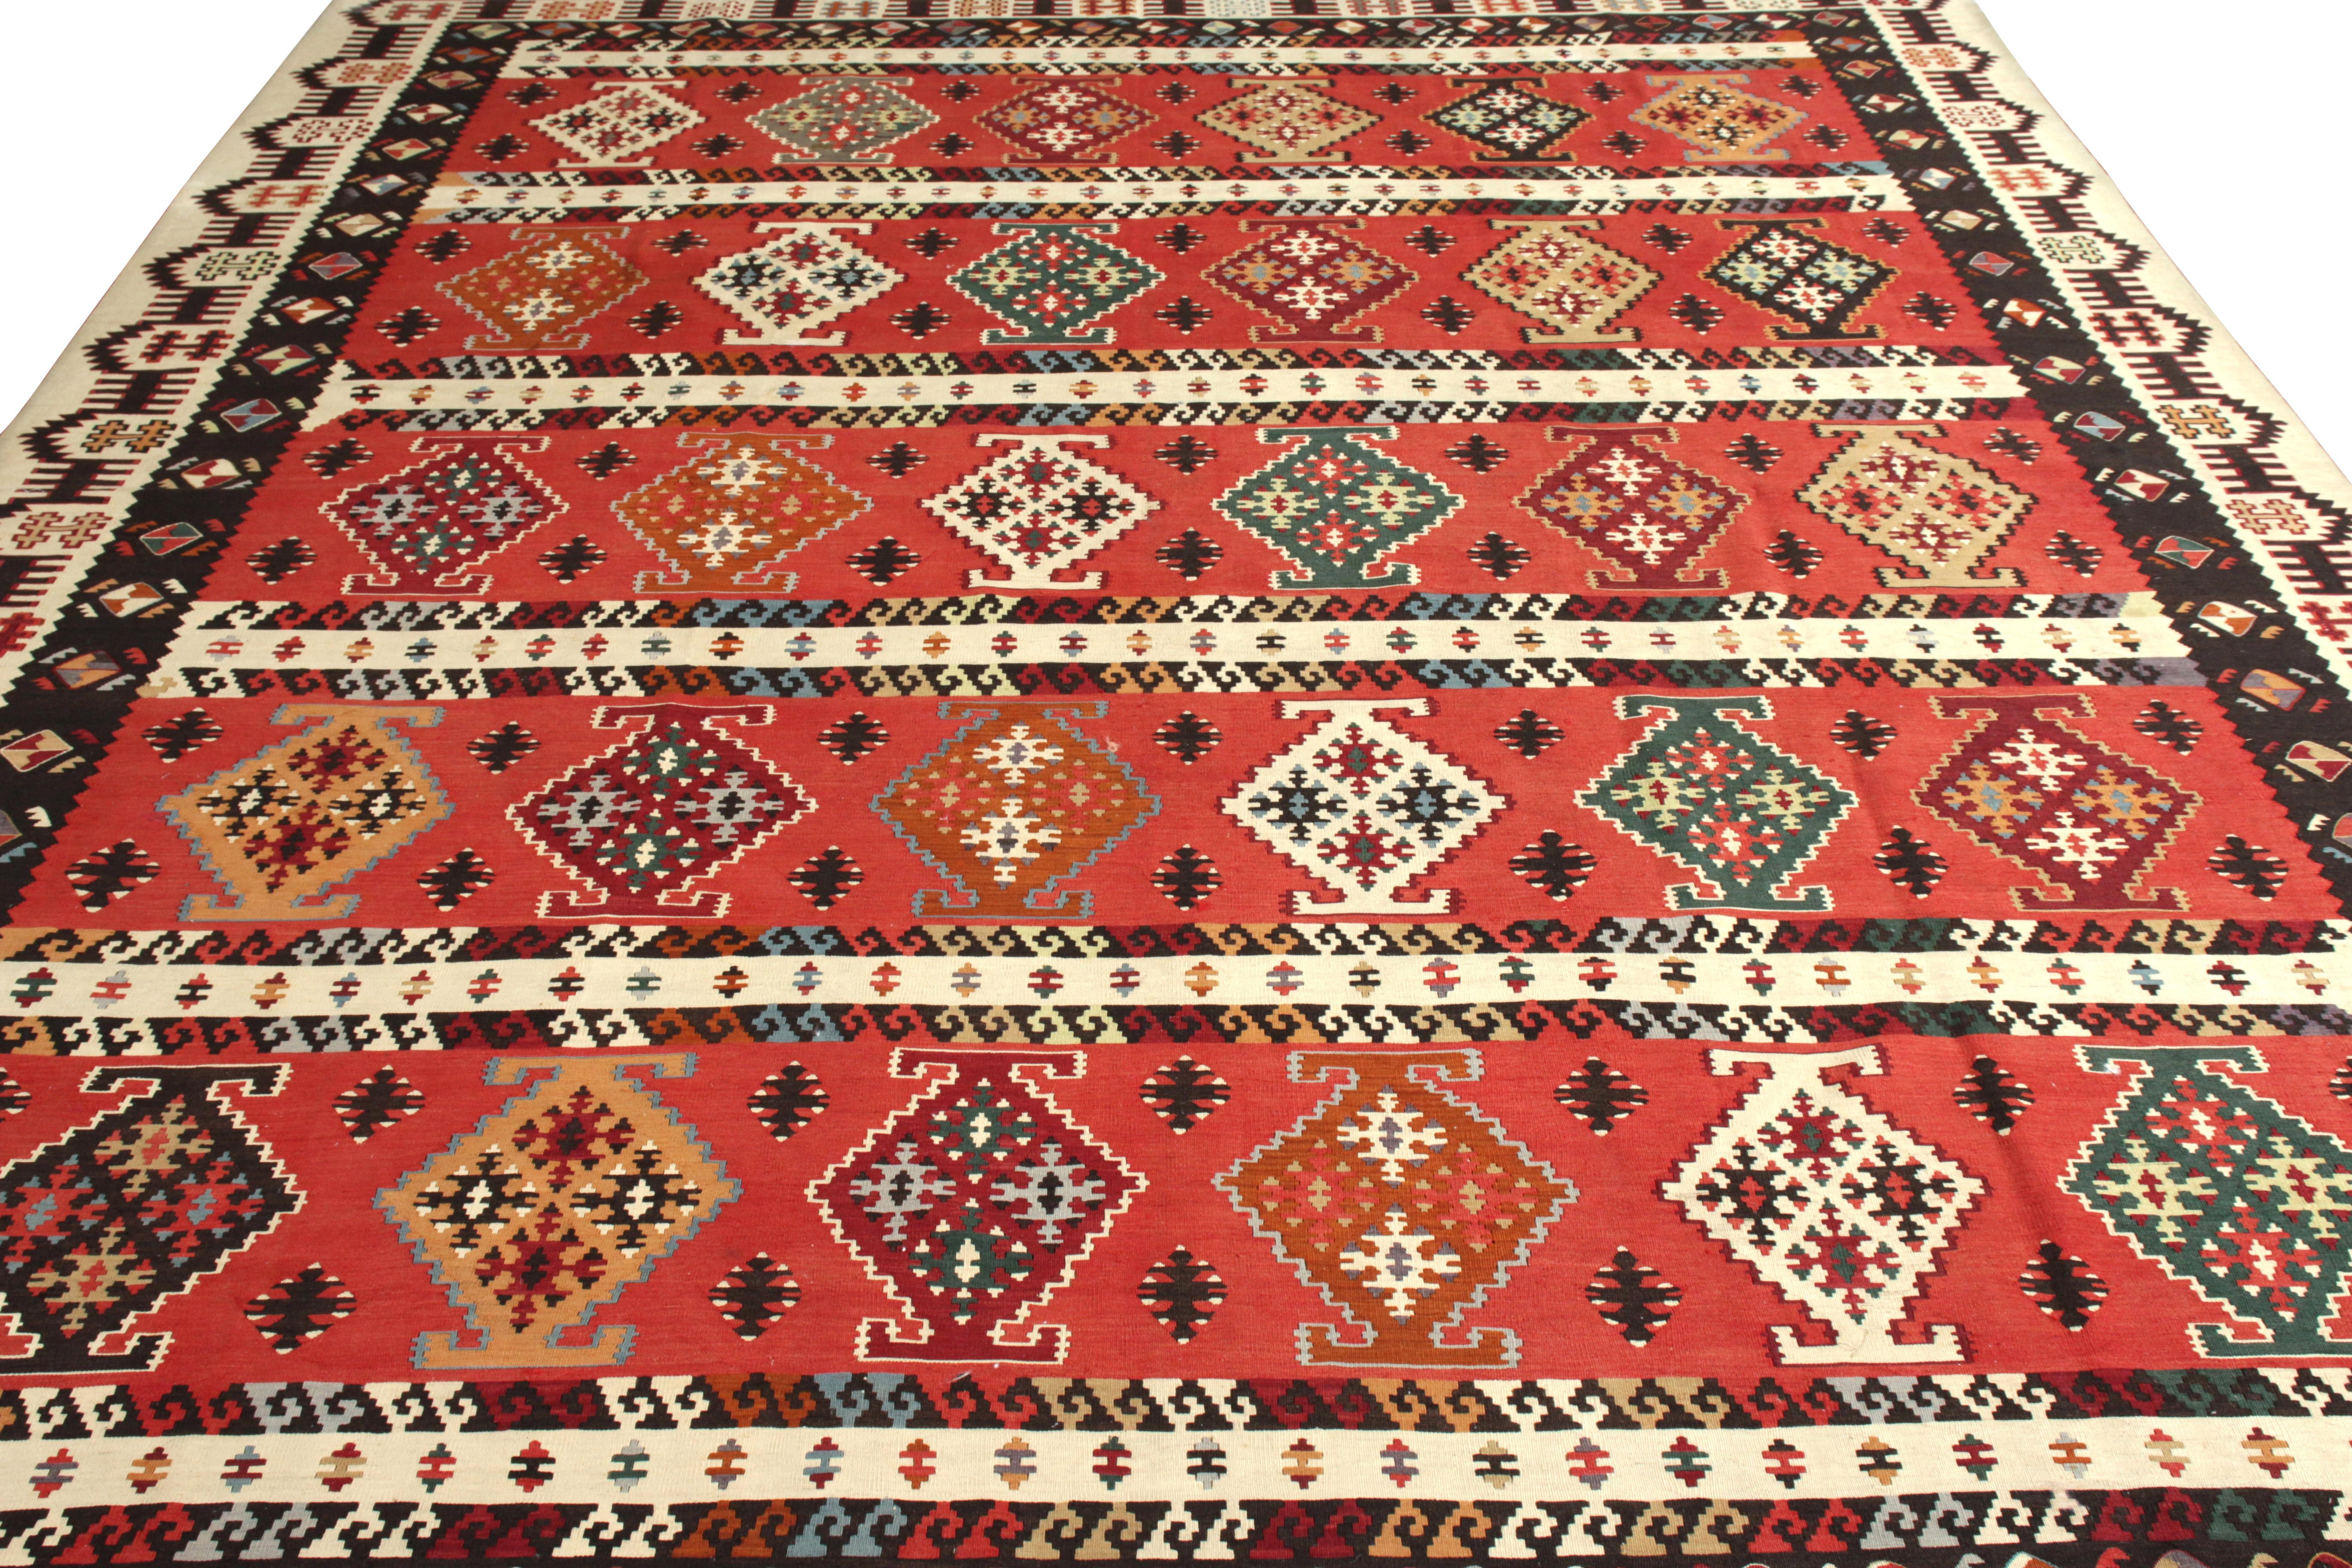 Turkish Vintage Midcentury Kilim Rug in Red Beige-Brown Geometric Pattern by Rug & Kilim